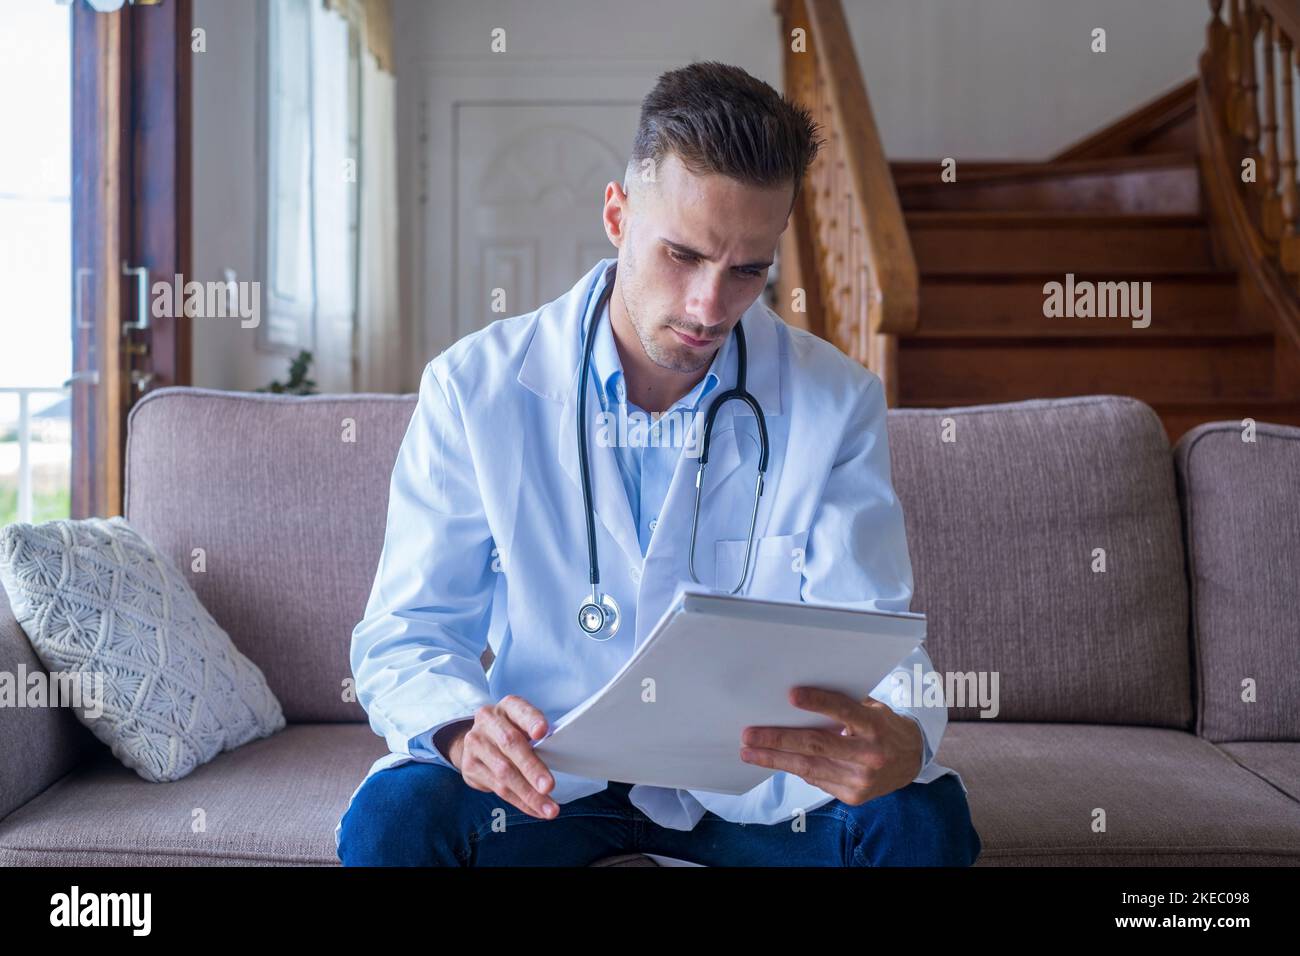 Porträt eines hübschen jungen männlichen Arztes in weißem Laborkittel mit Stethoskop, der Berichte im medizinischen Büro ansieht. Kaukasischer männlicher Gesundheitsarbeiter in Uniform, der schriftliche Berichte oder Testergebnisse des Patienten analysiert Stockfoto